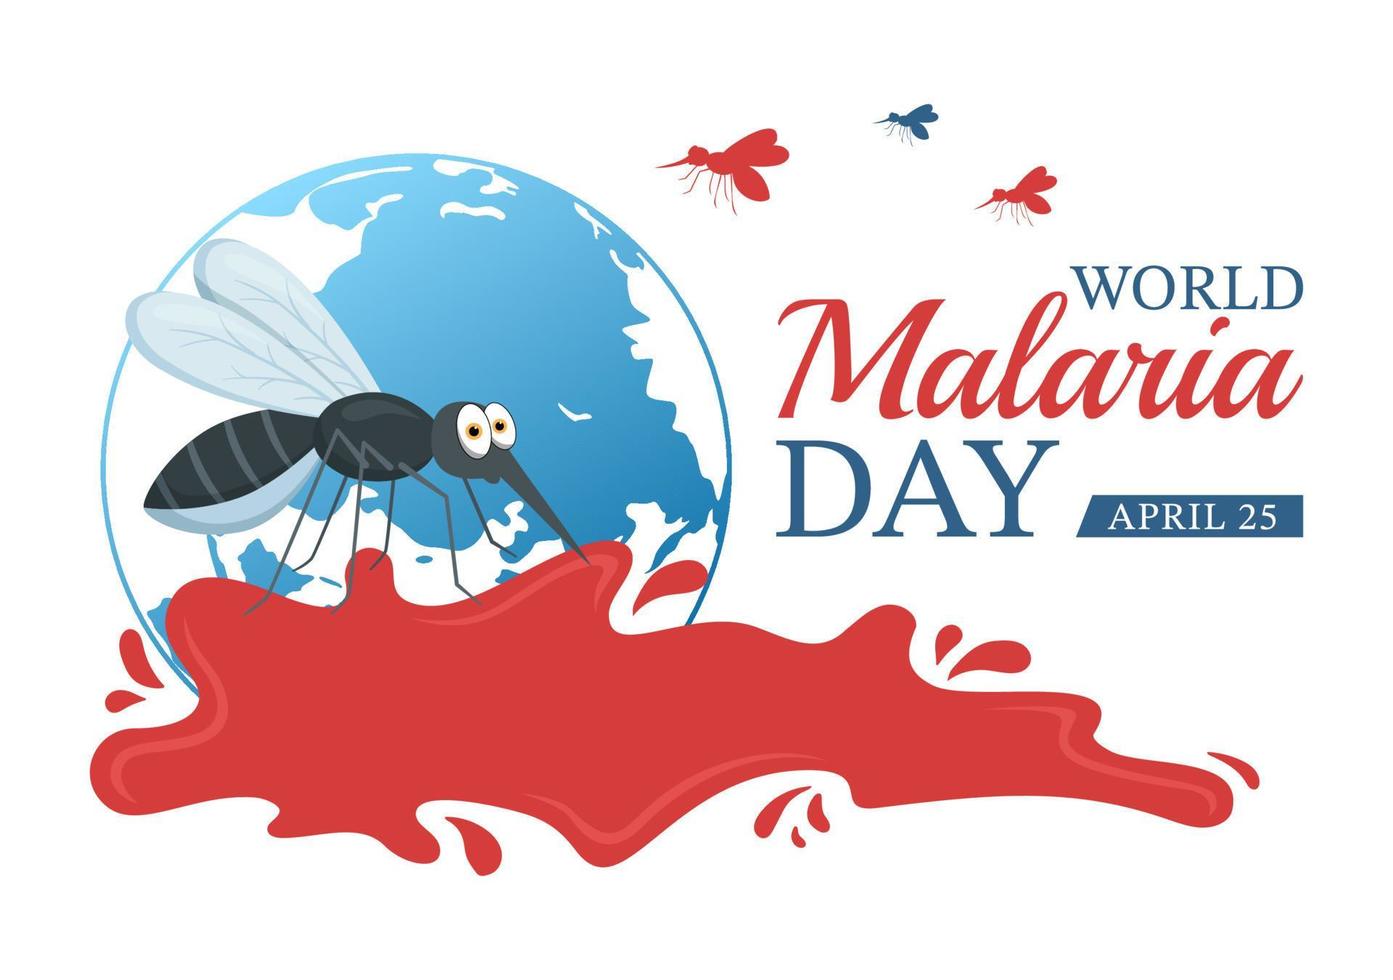 värld malaria dag på april 25 illustration med jord skyddade från mygg i platt tecknad serie hand dragen för webb baner eller landning sida mallar vektor